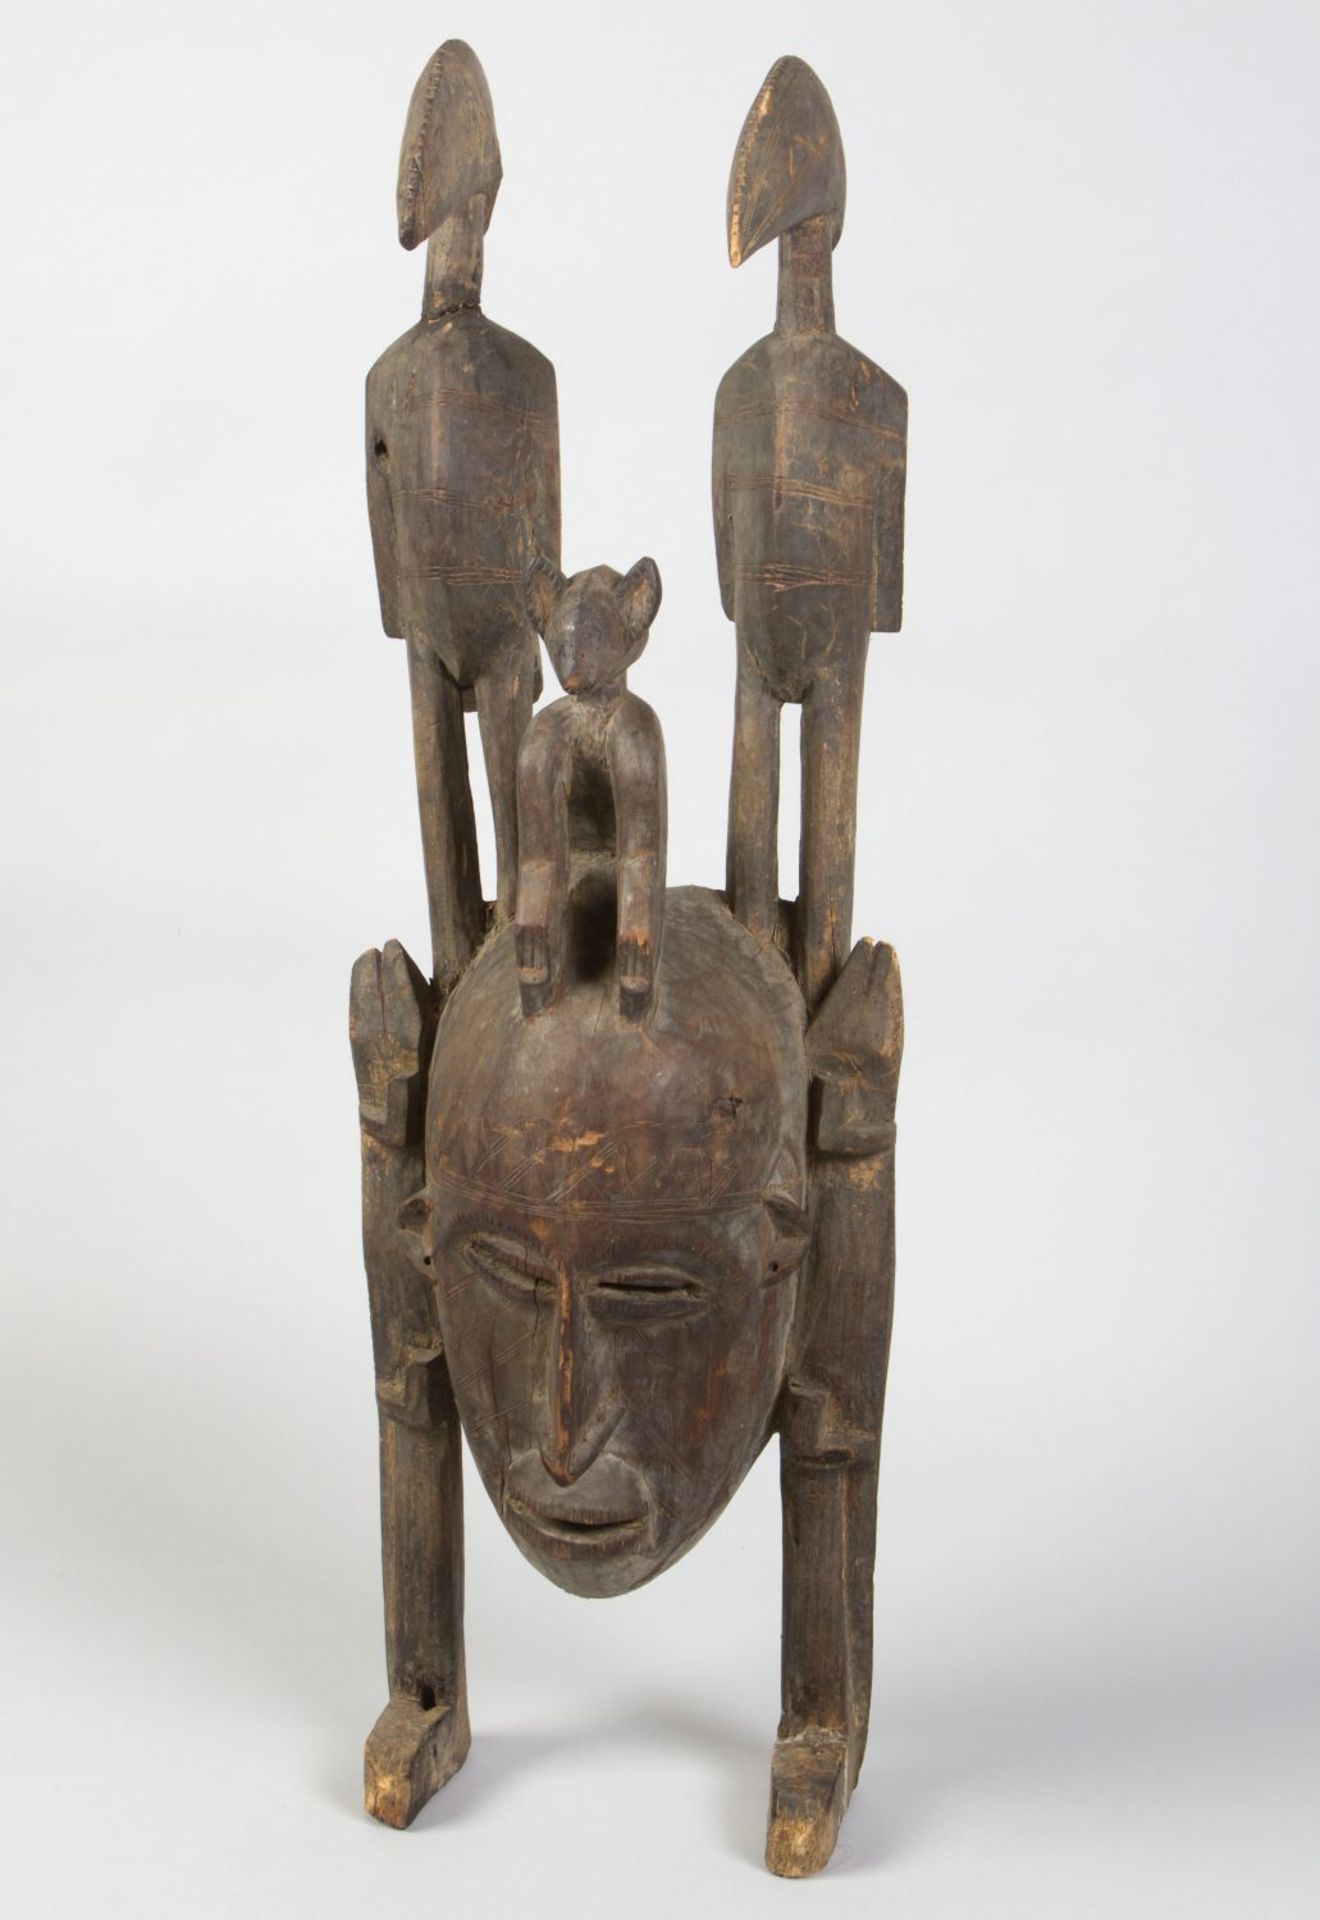 Maske Holz, geschnitzt. In Form eines menschlichen Gesichtes mit Tierfiguren. Afrika. H. 99 cm. Besc